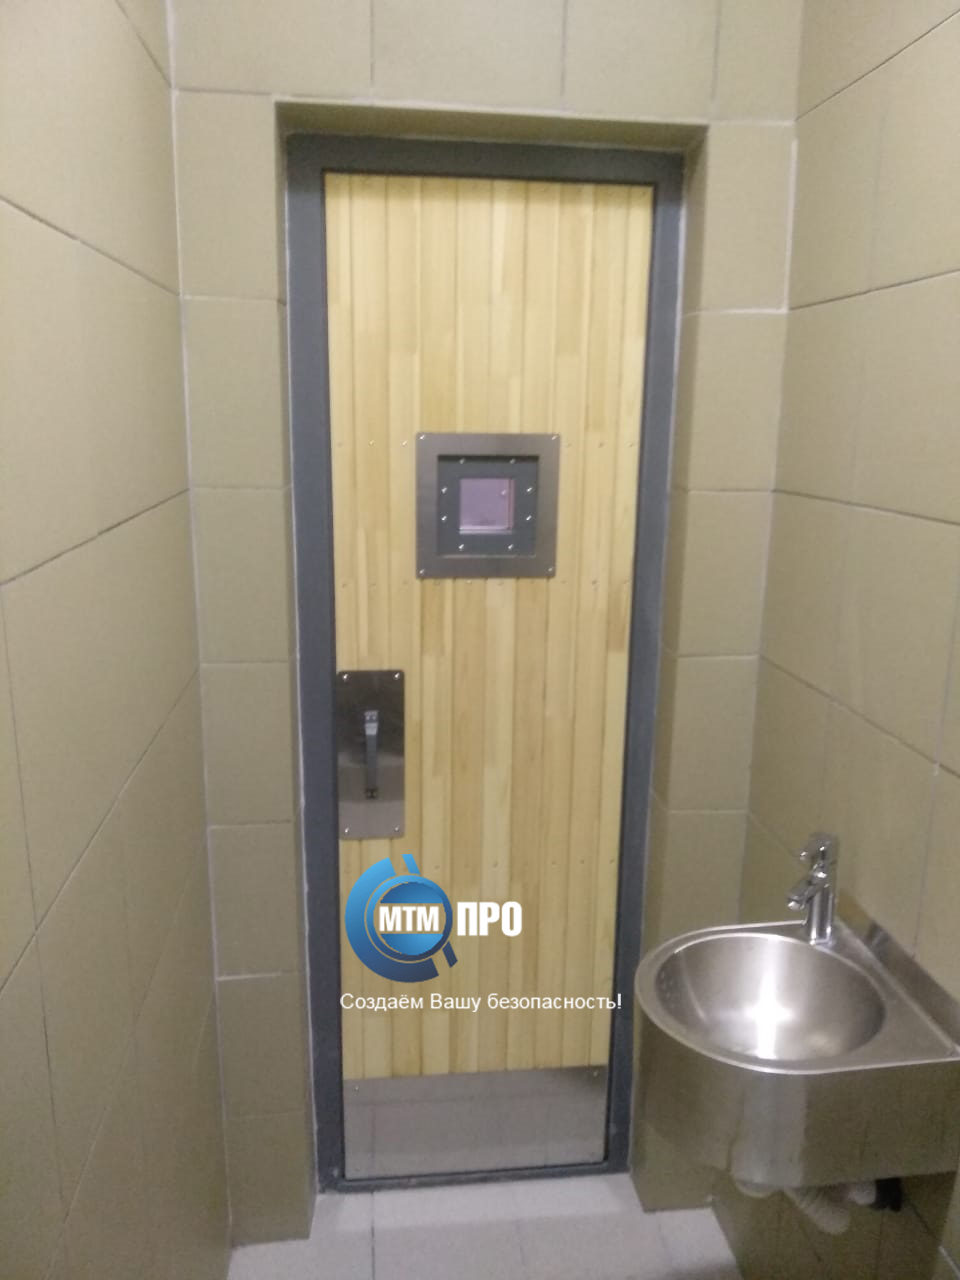 Дверь в туалет подсудимых